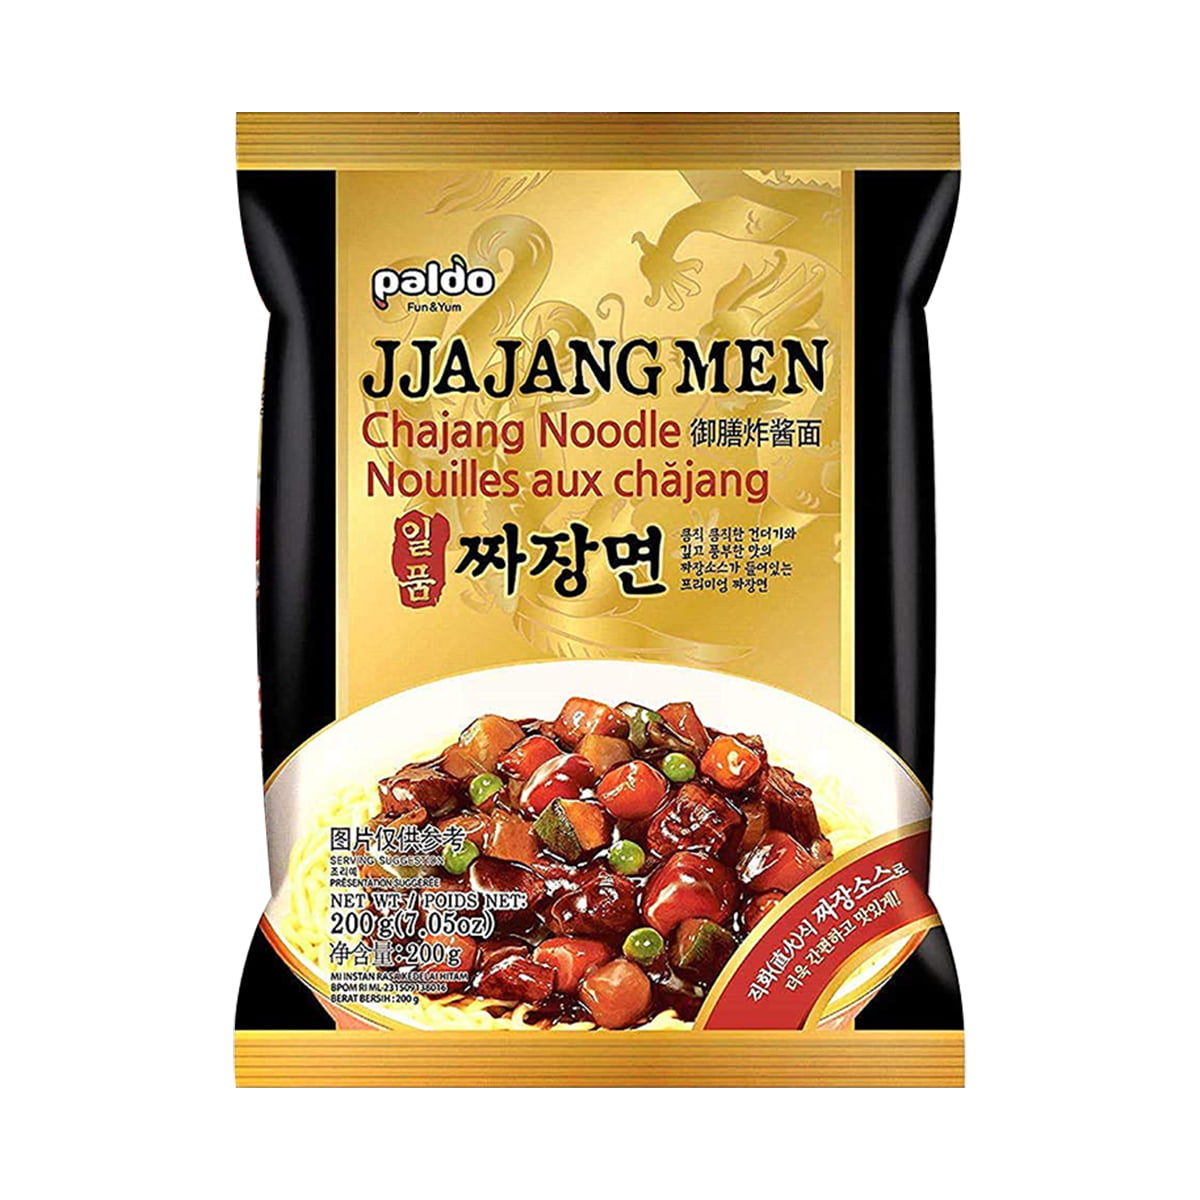 Lamen Coreano Jjajangmen Tipo Chajangmen Paldo - 200 gramas